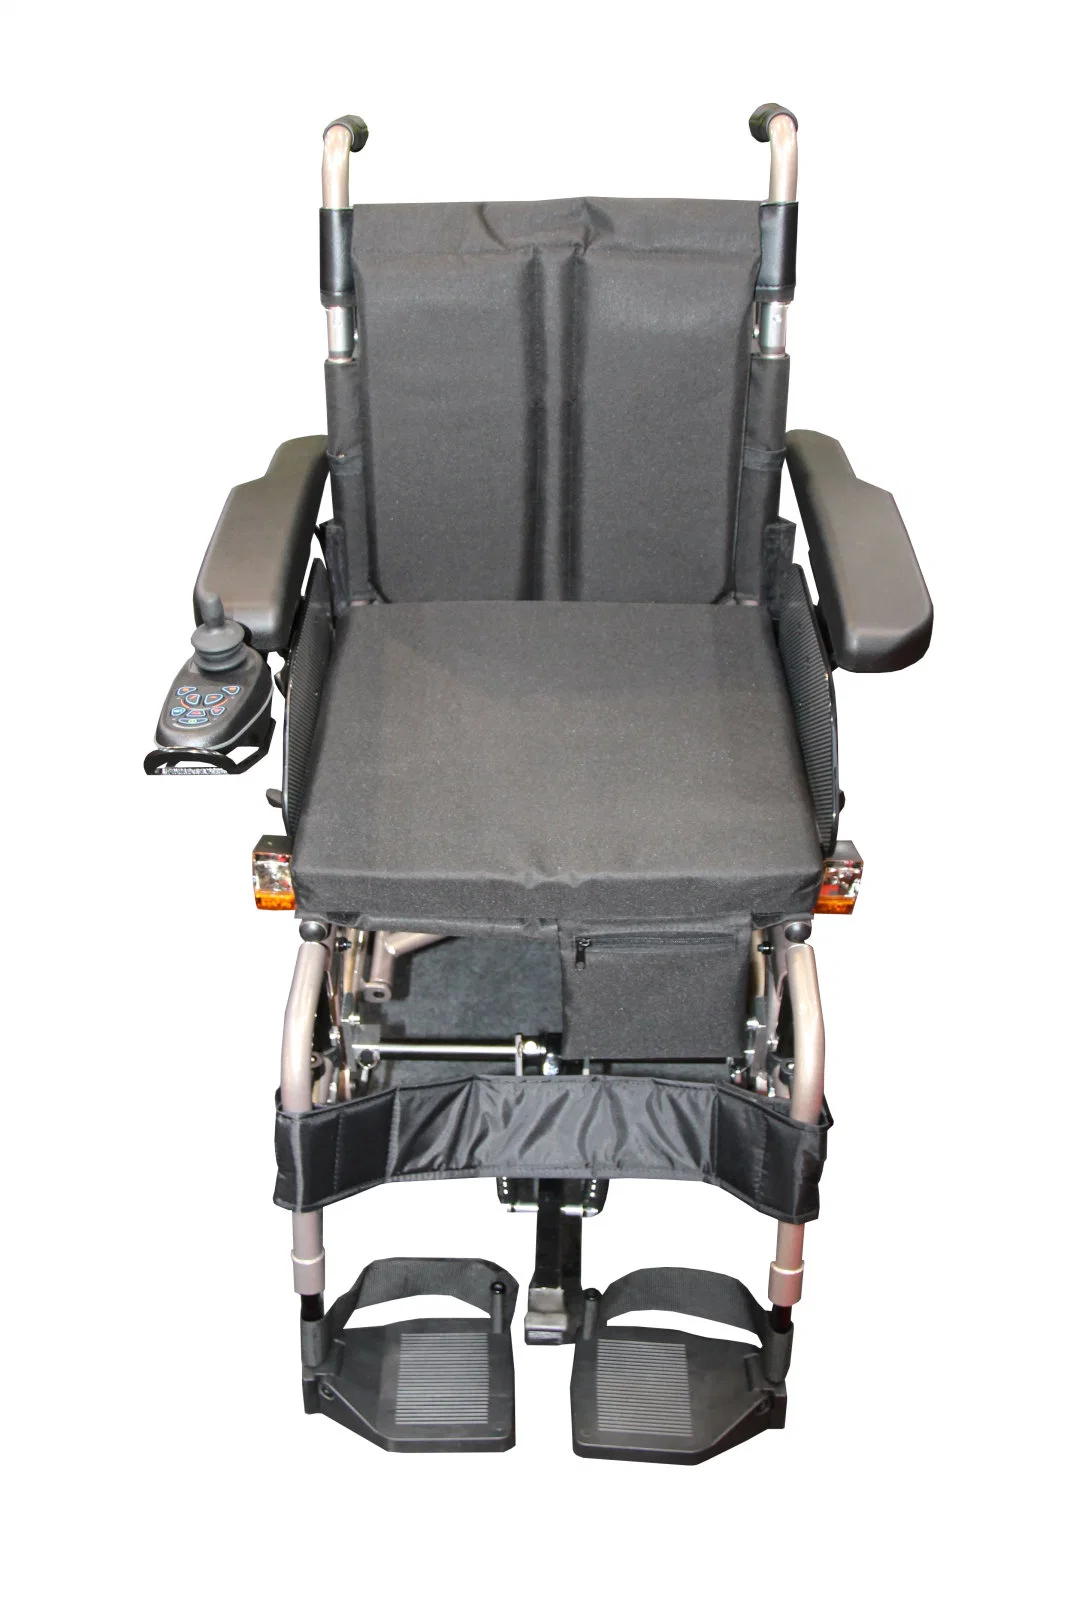 O alto desempenho fácil reguláveis em altura assento Walker cana de Energia Portátil Dobrável cadeira de rodas